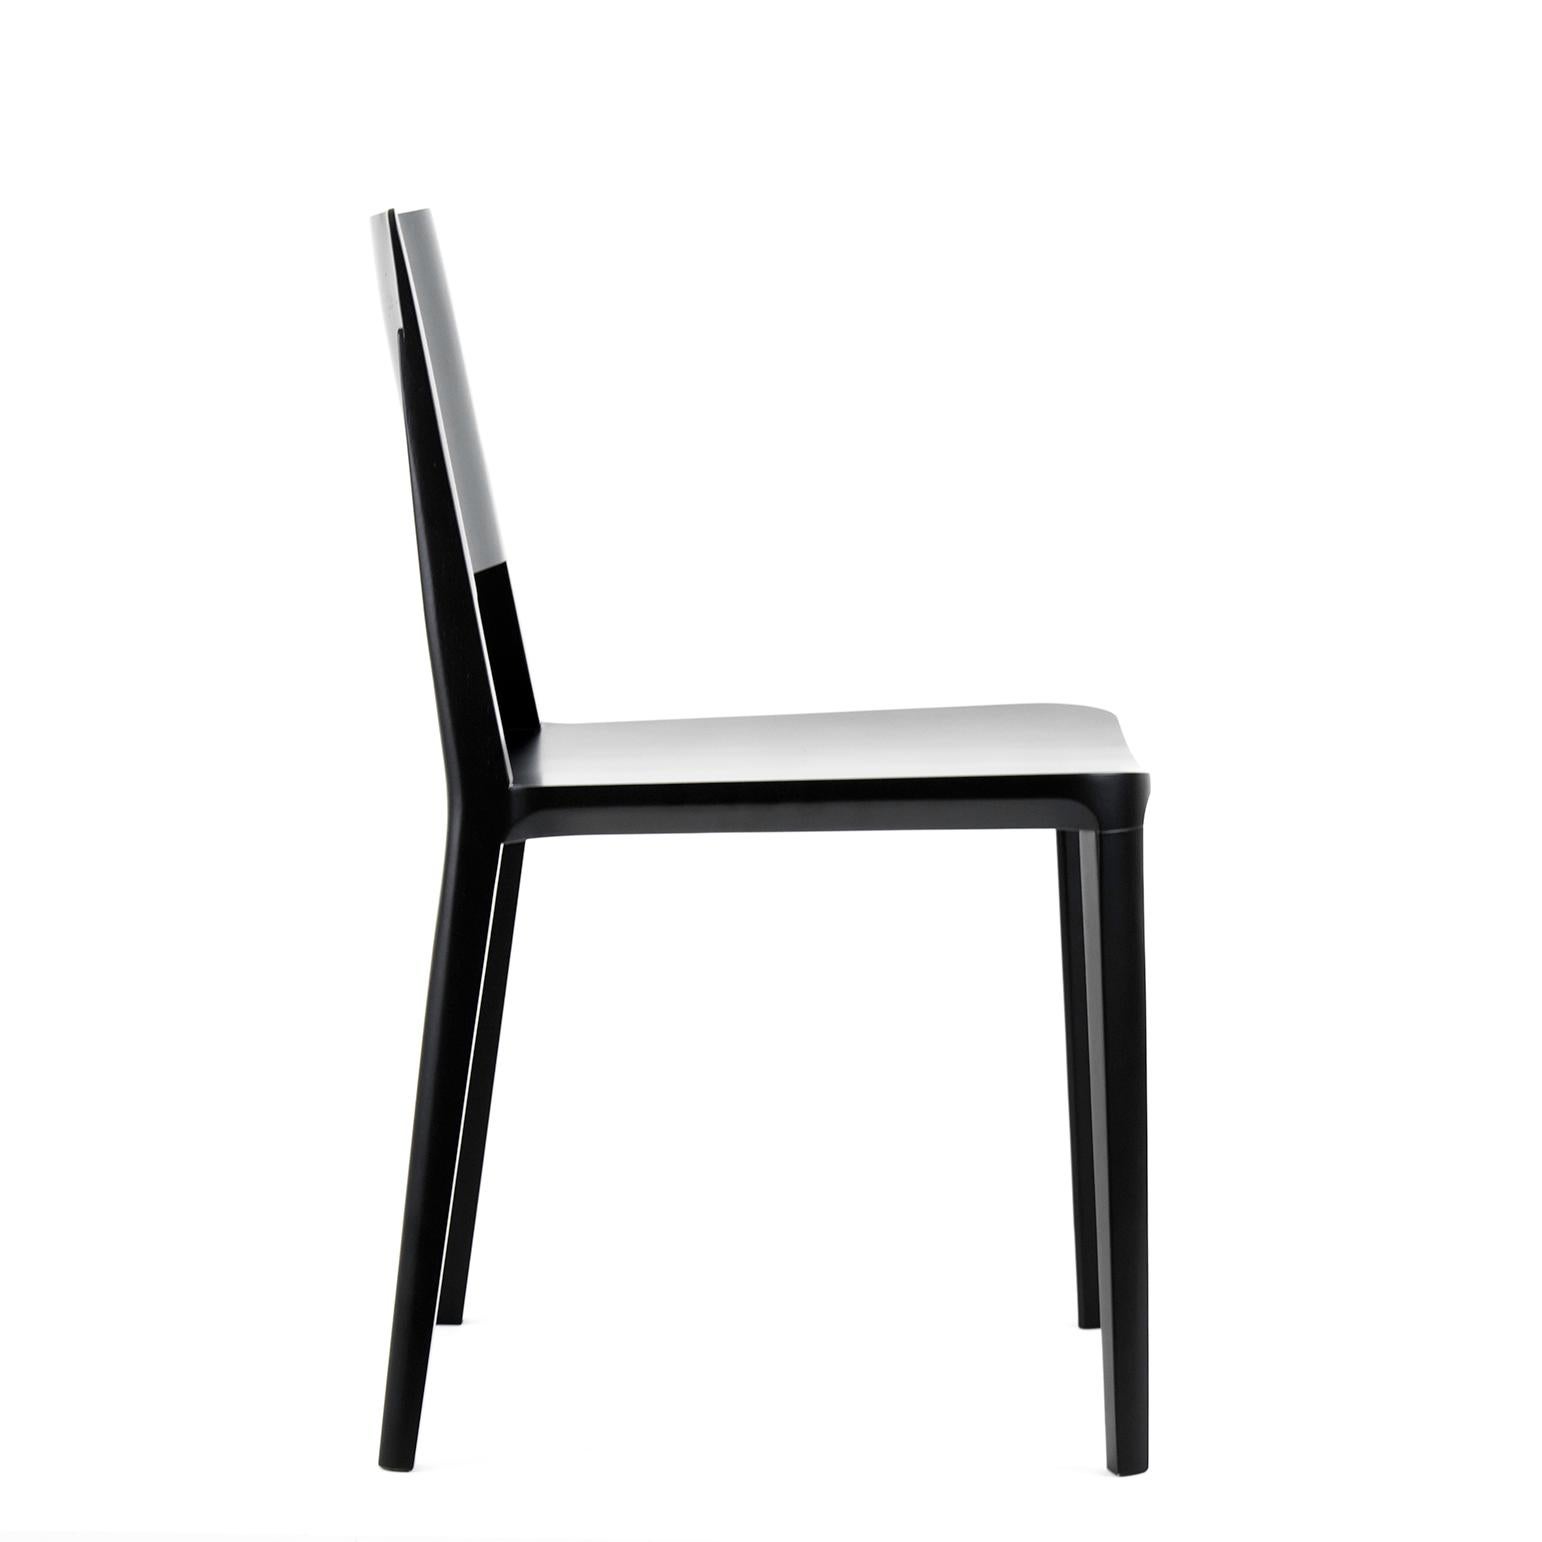 Collection de chaises Evo.

Notre collection Evo est basée sur la fusion harmonieuse entre les formes géométriques et l'interprétation moderne des archétypes du bois. 

Tous les éléments qui composent la chaise sont conçus avec précision pour